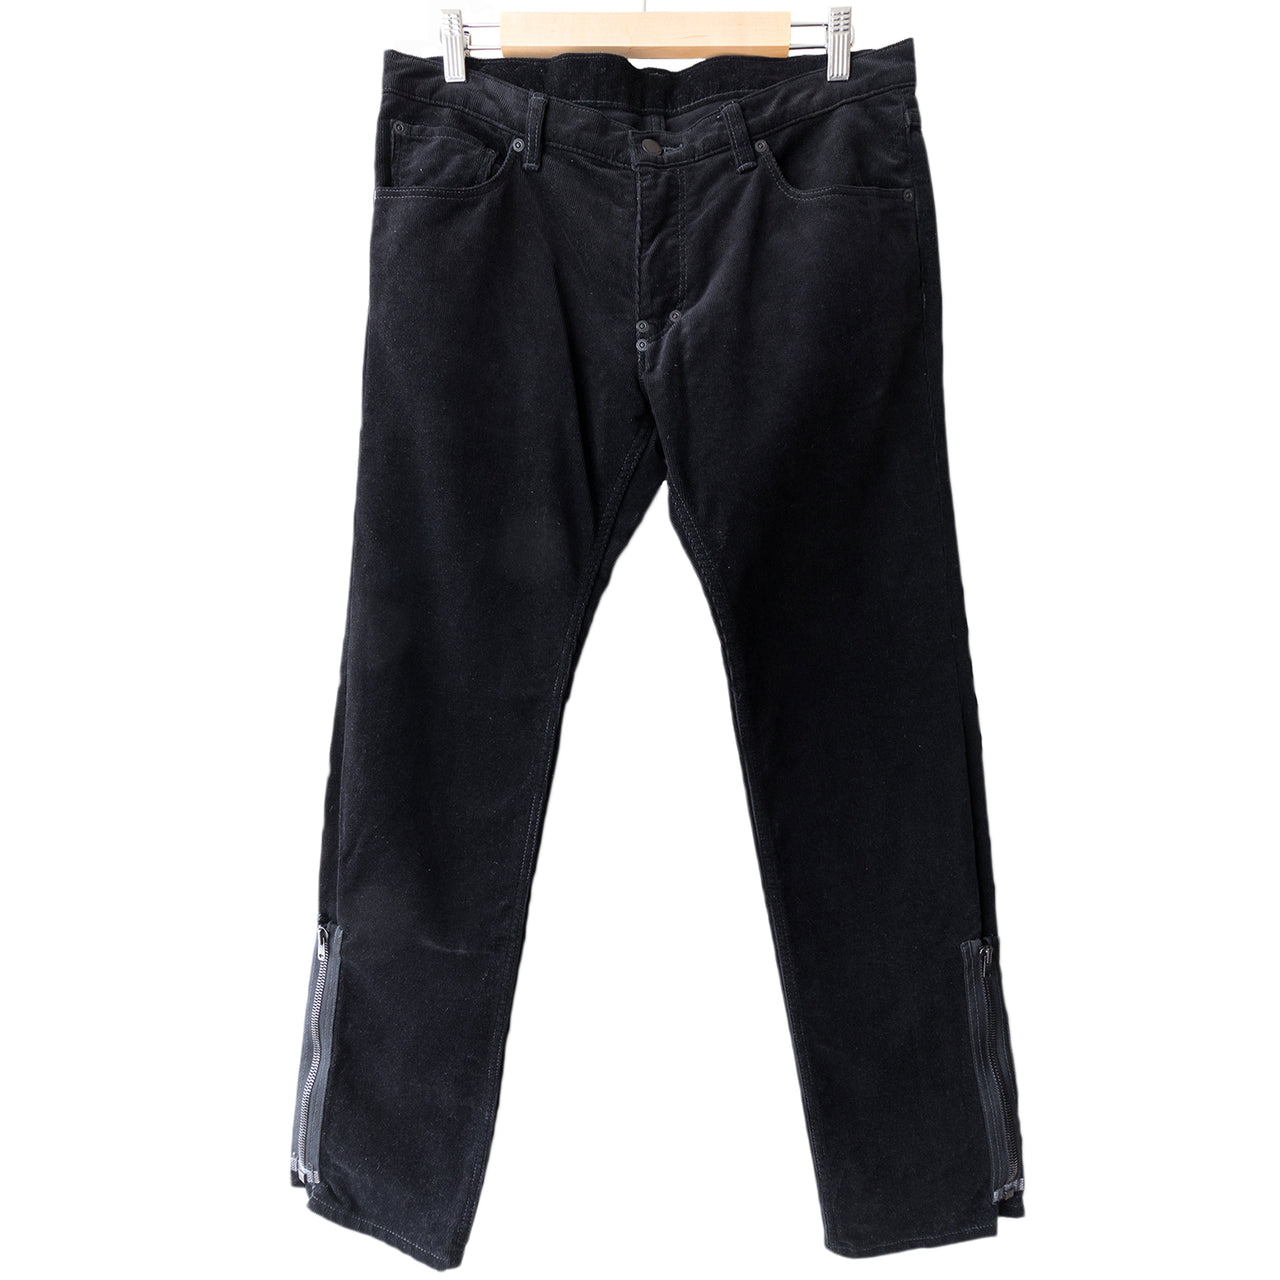 Number (N)ine Black Corduroy Pain Jeans - AW06 "Noir"